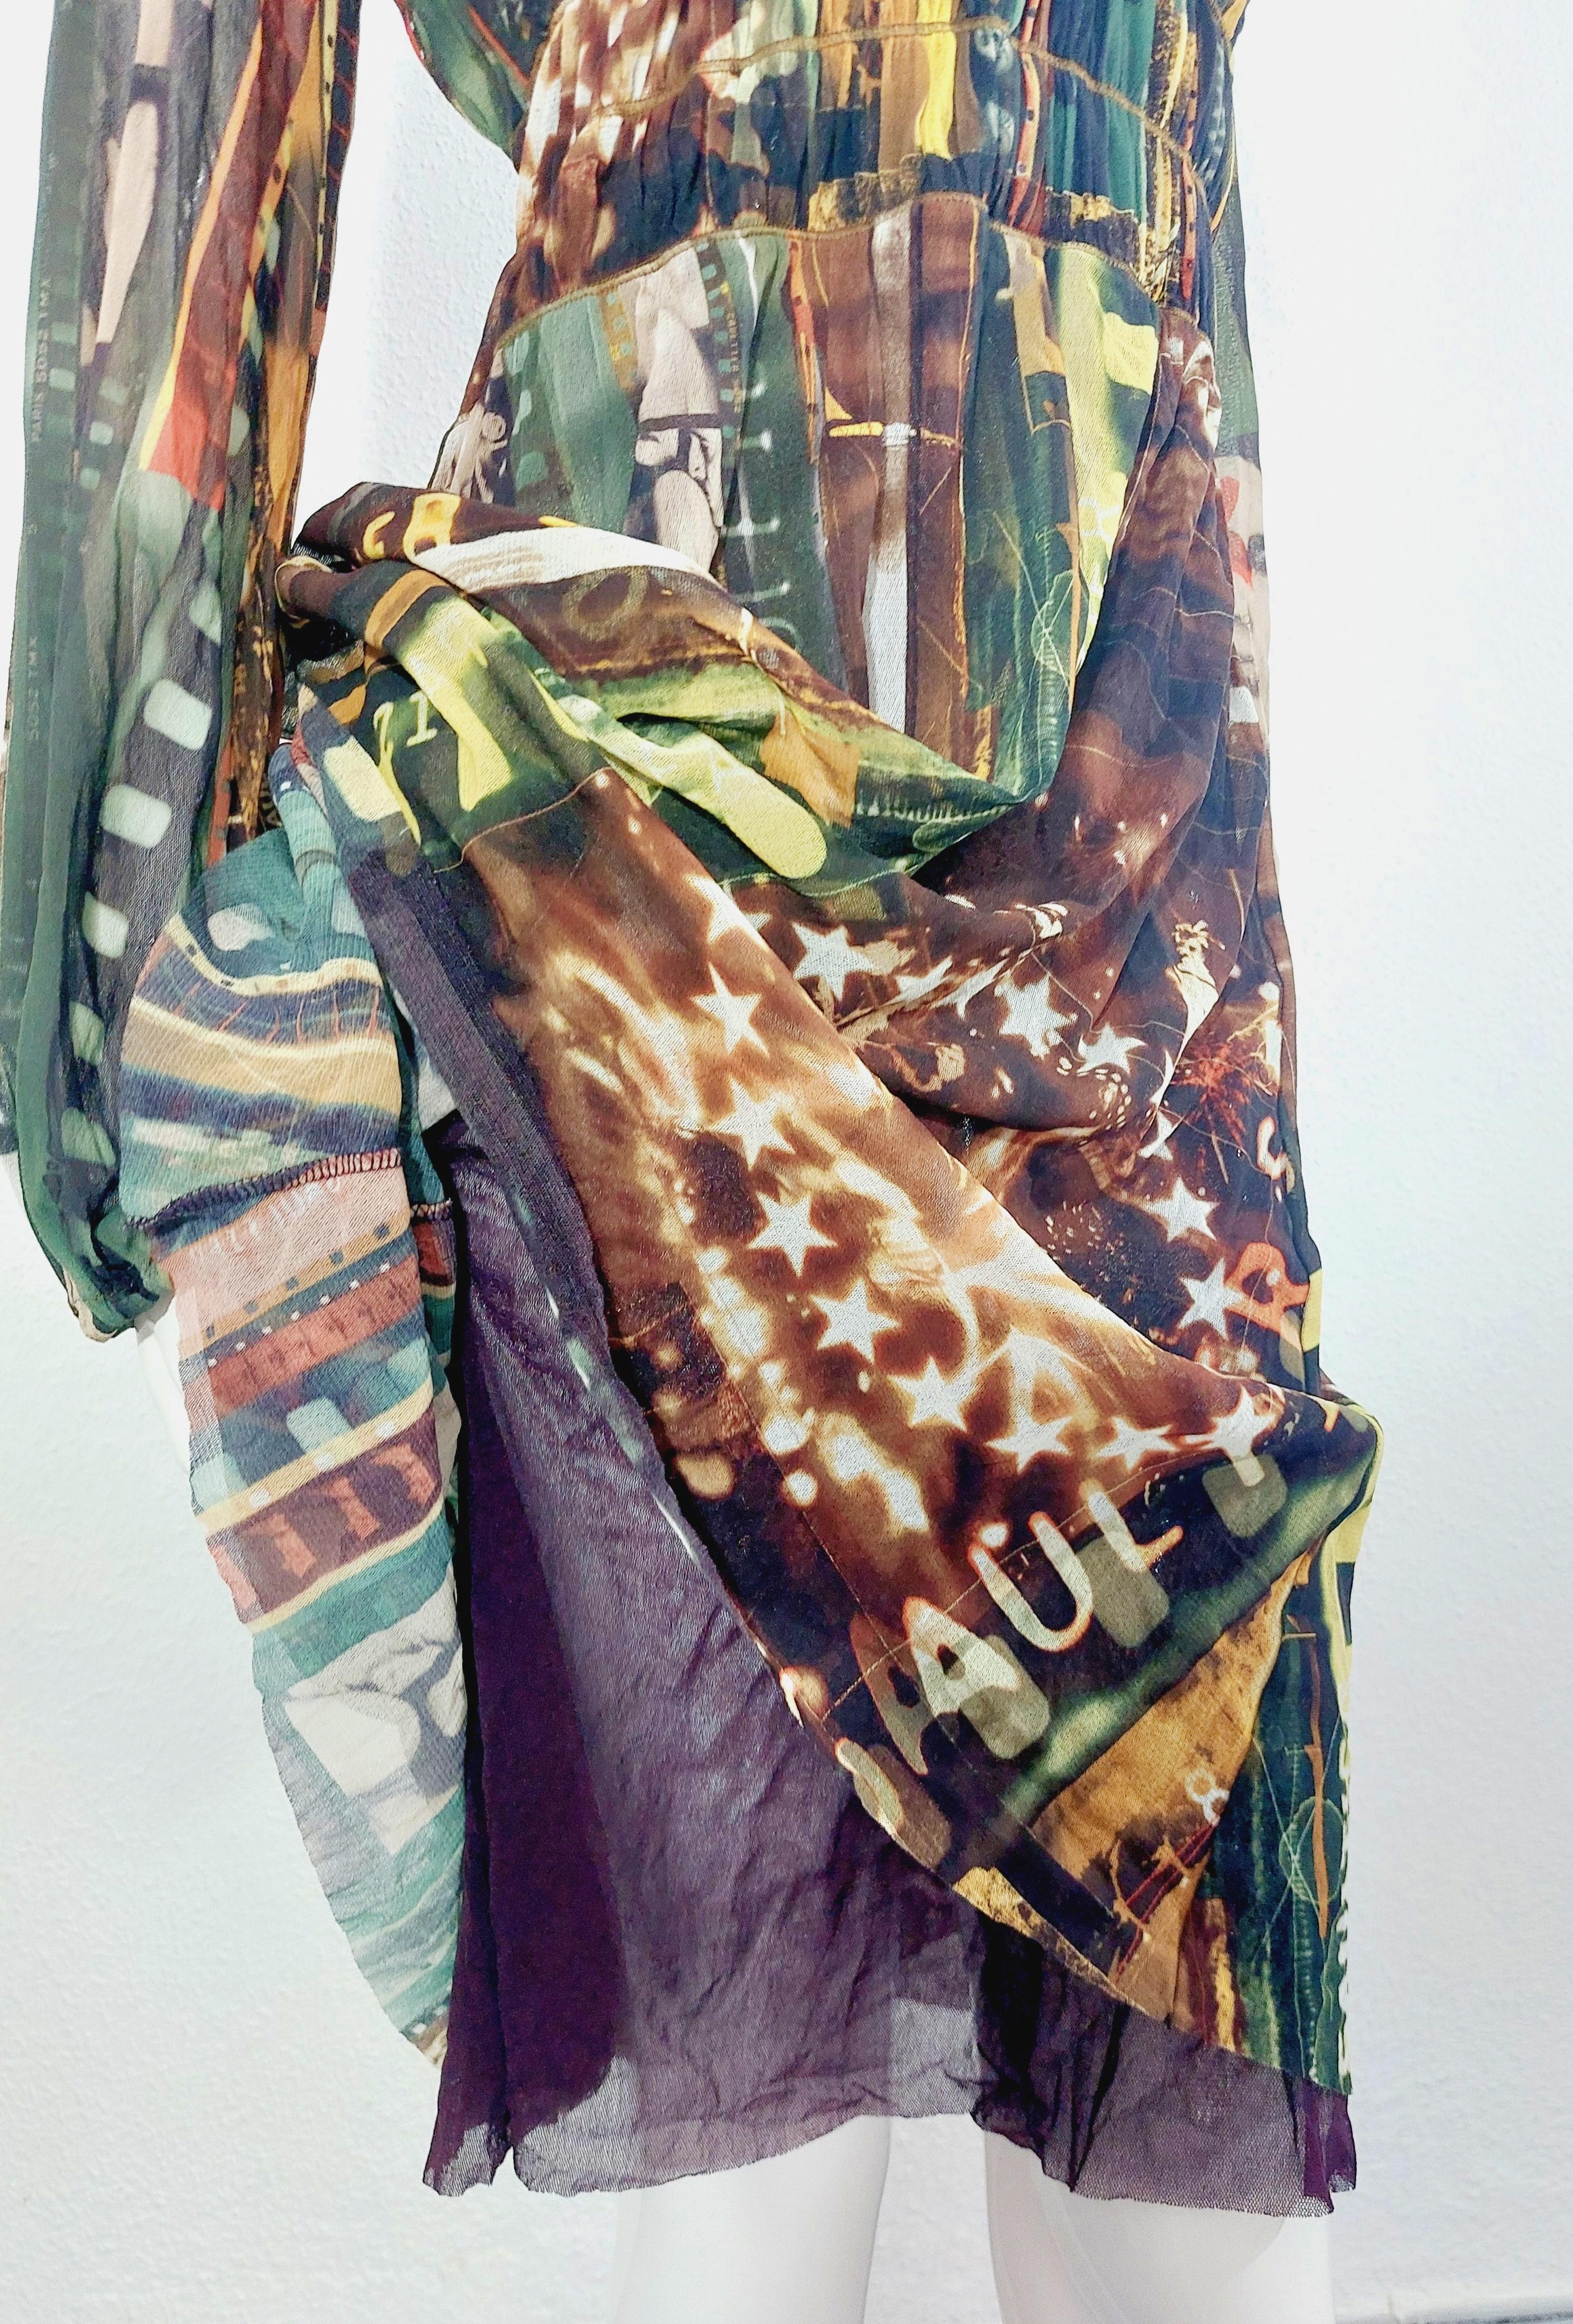 Jean Paul Gaultier Faces Silhouettes Paris Cinema Transaprent Mesh Dress  For Sale 11